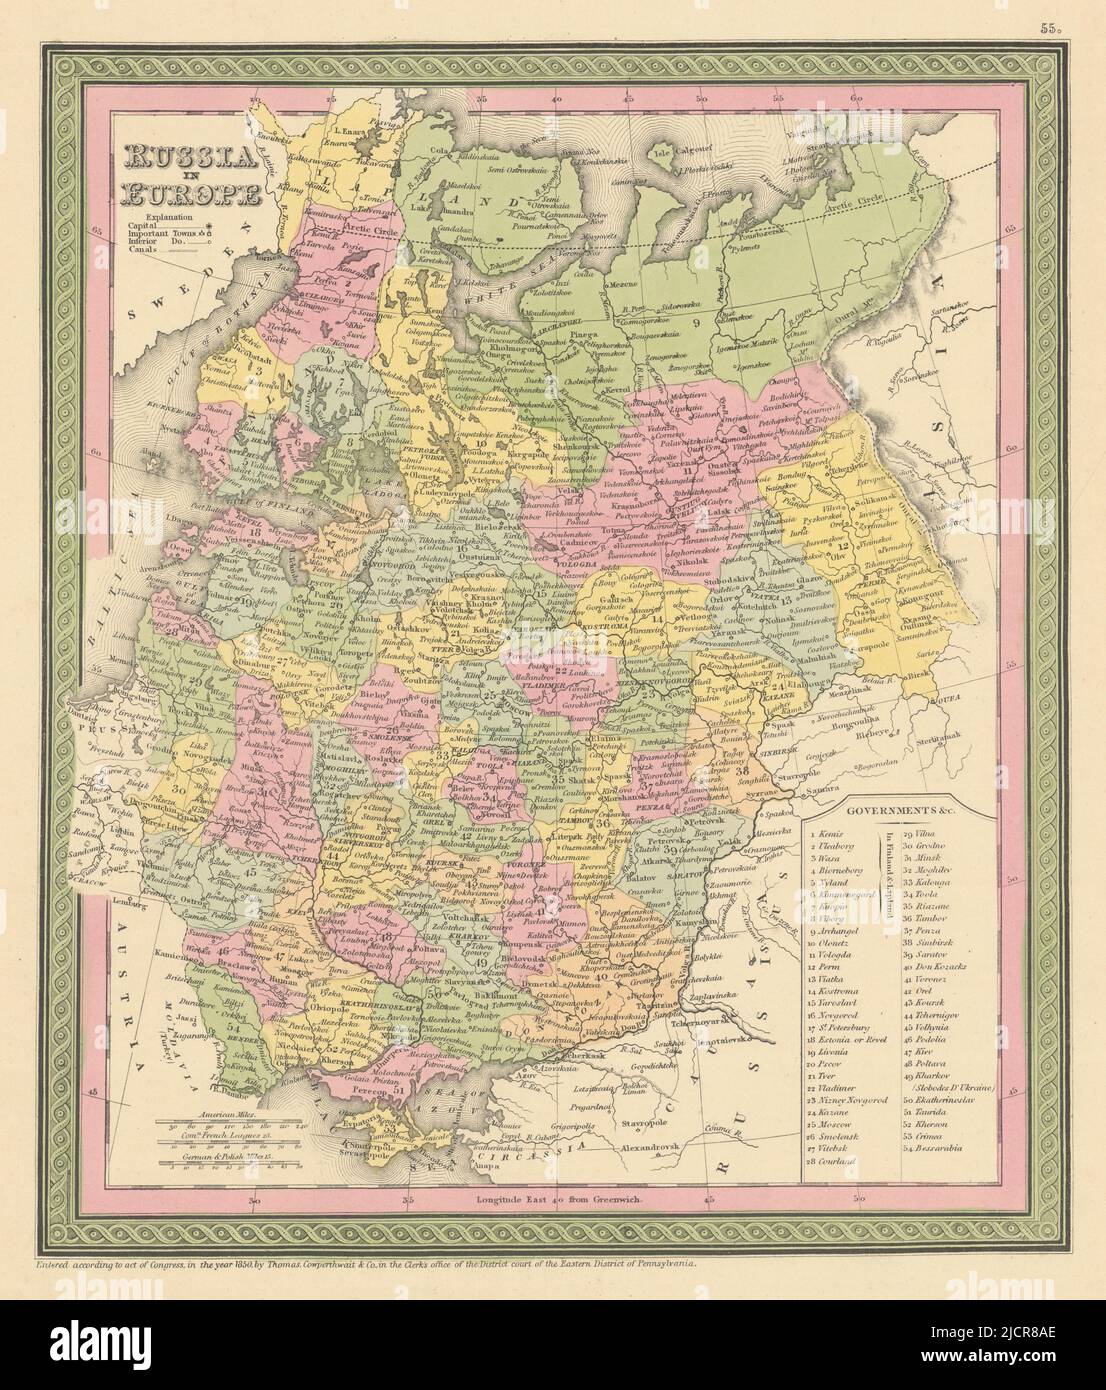 Russia in Europe. Ukraine Baltics Belarus Finland. COWPERTHWAIT 1852 old map Stock Photo